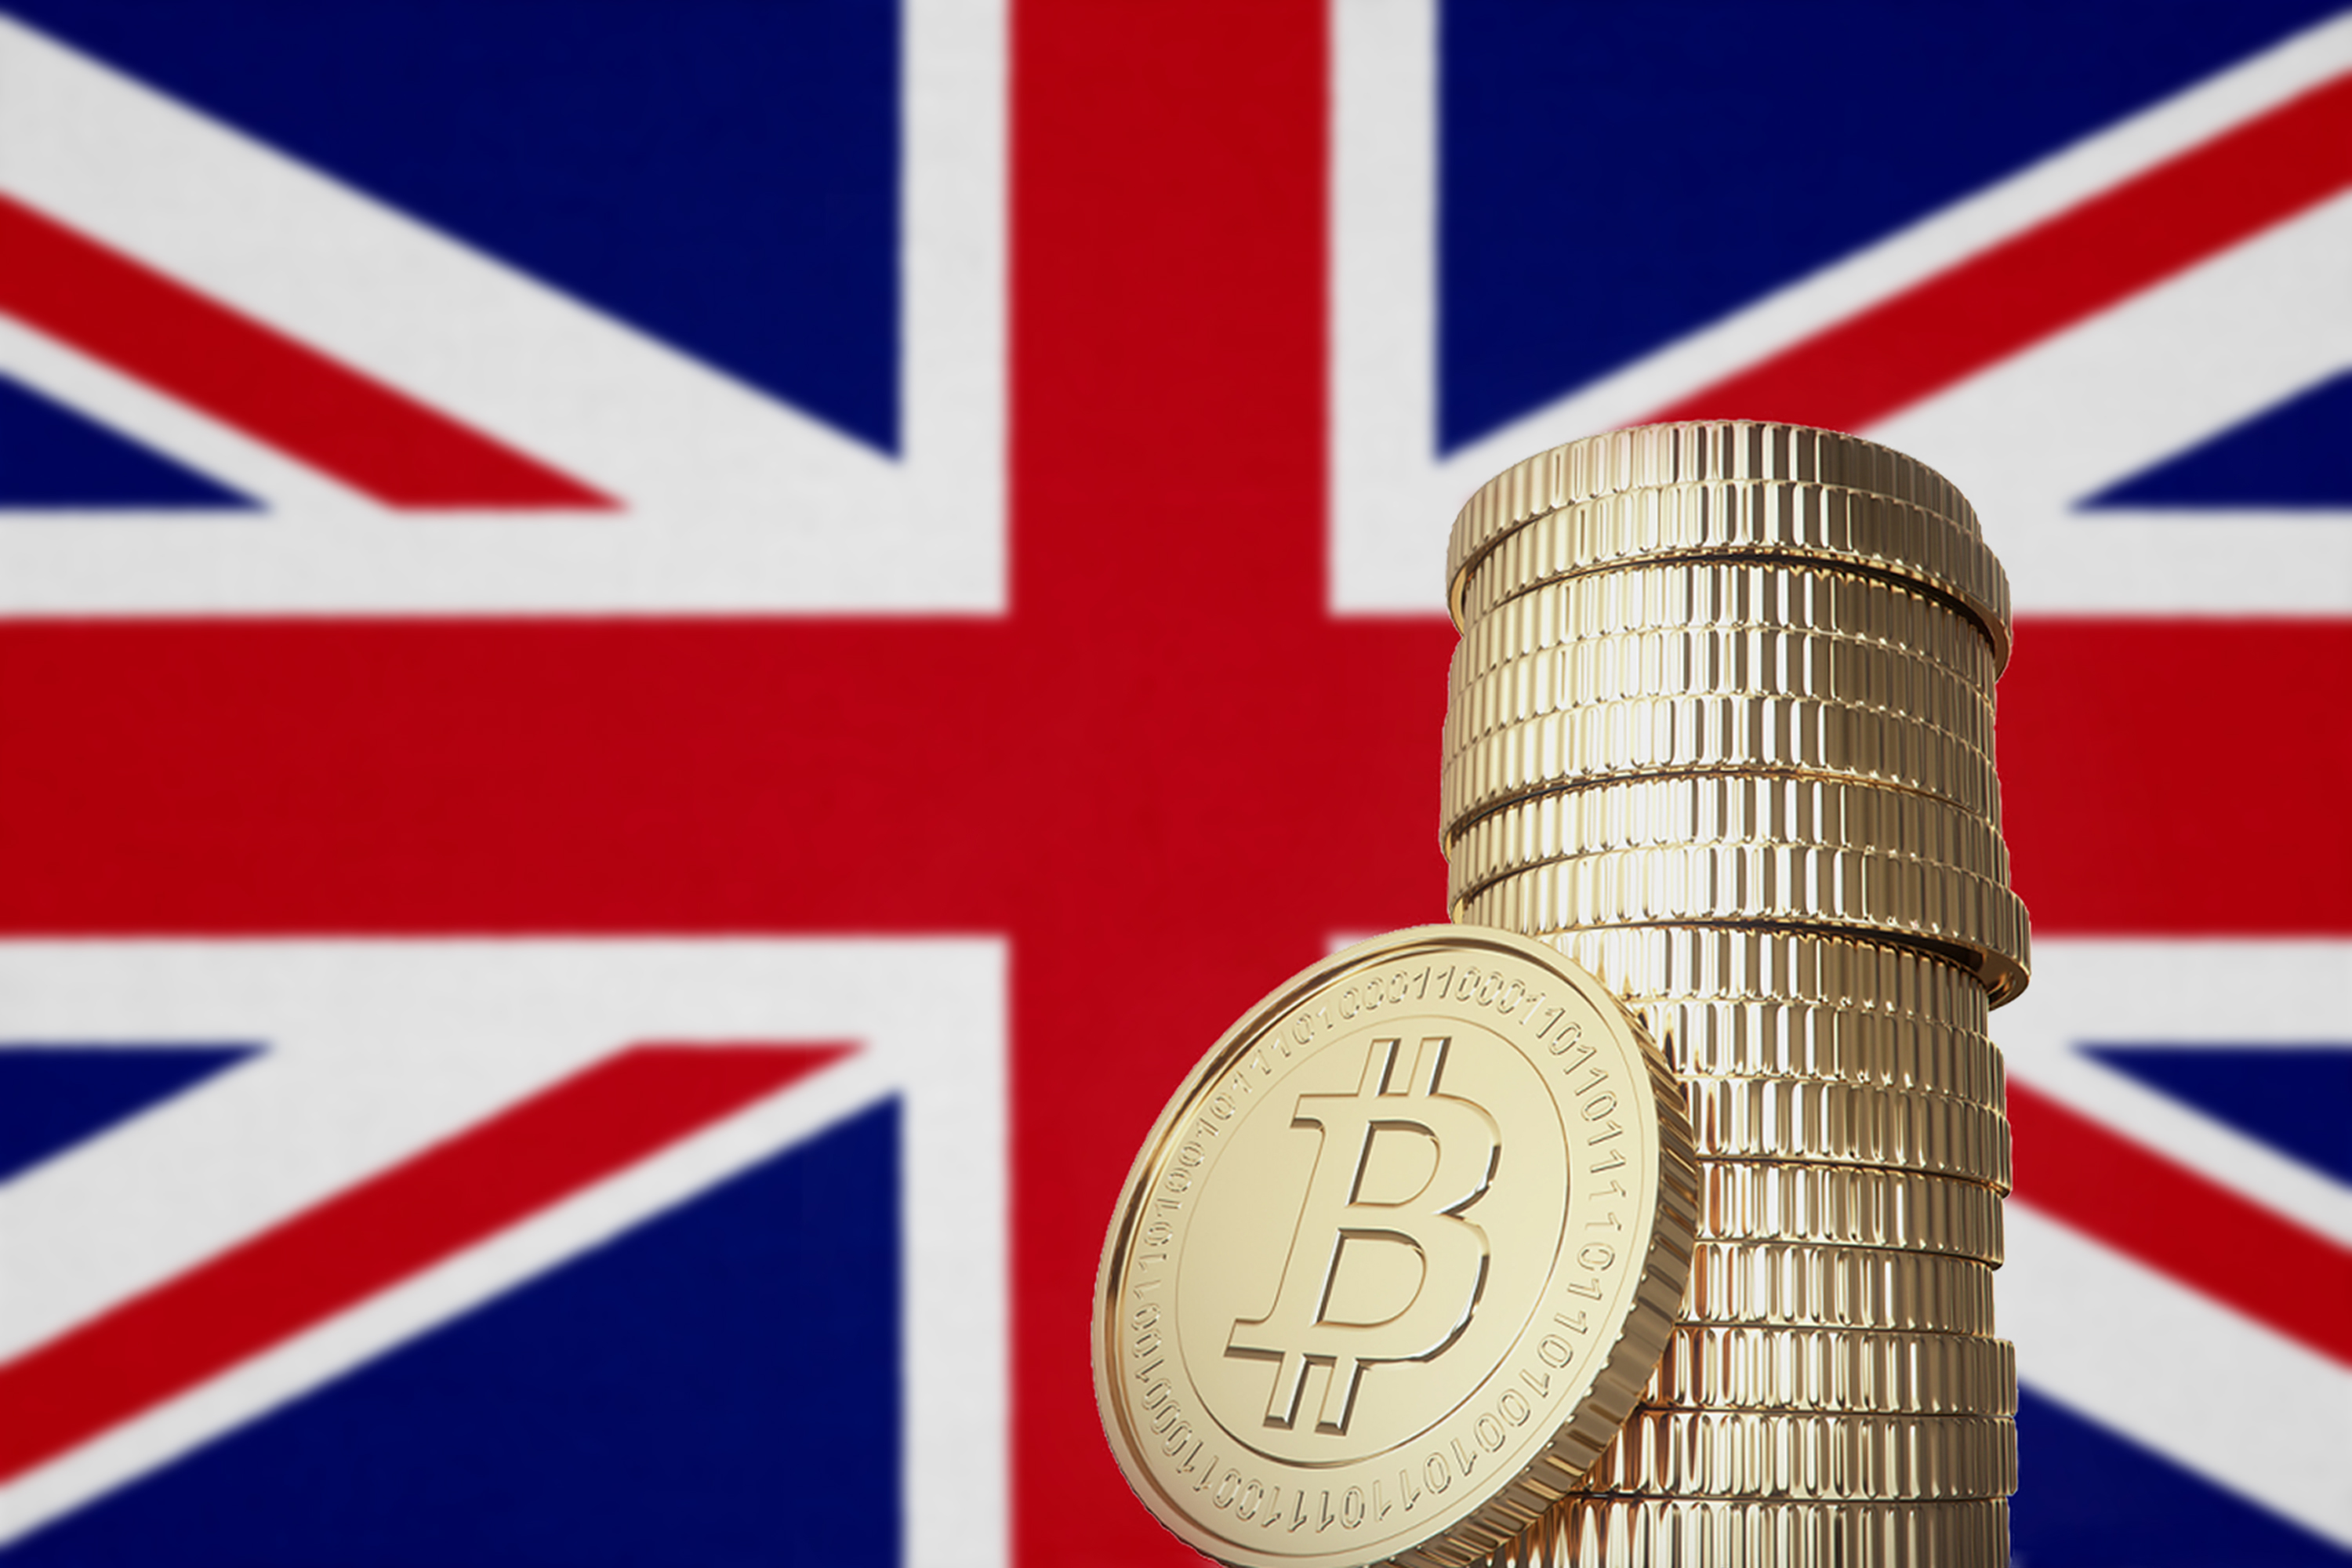 Investidores de criptomoedas do Reino Unido devem ter posições limitadas, diz regulador